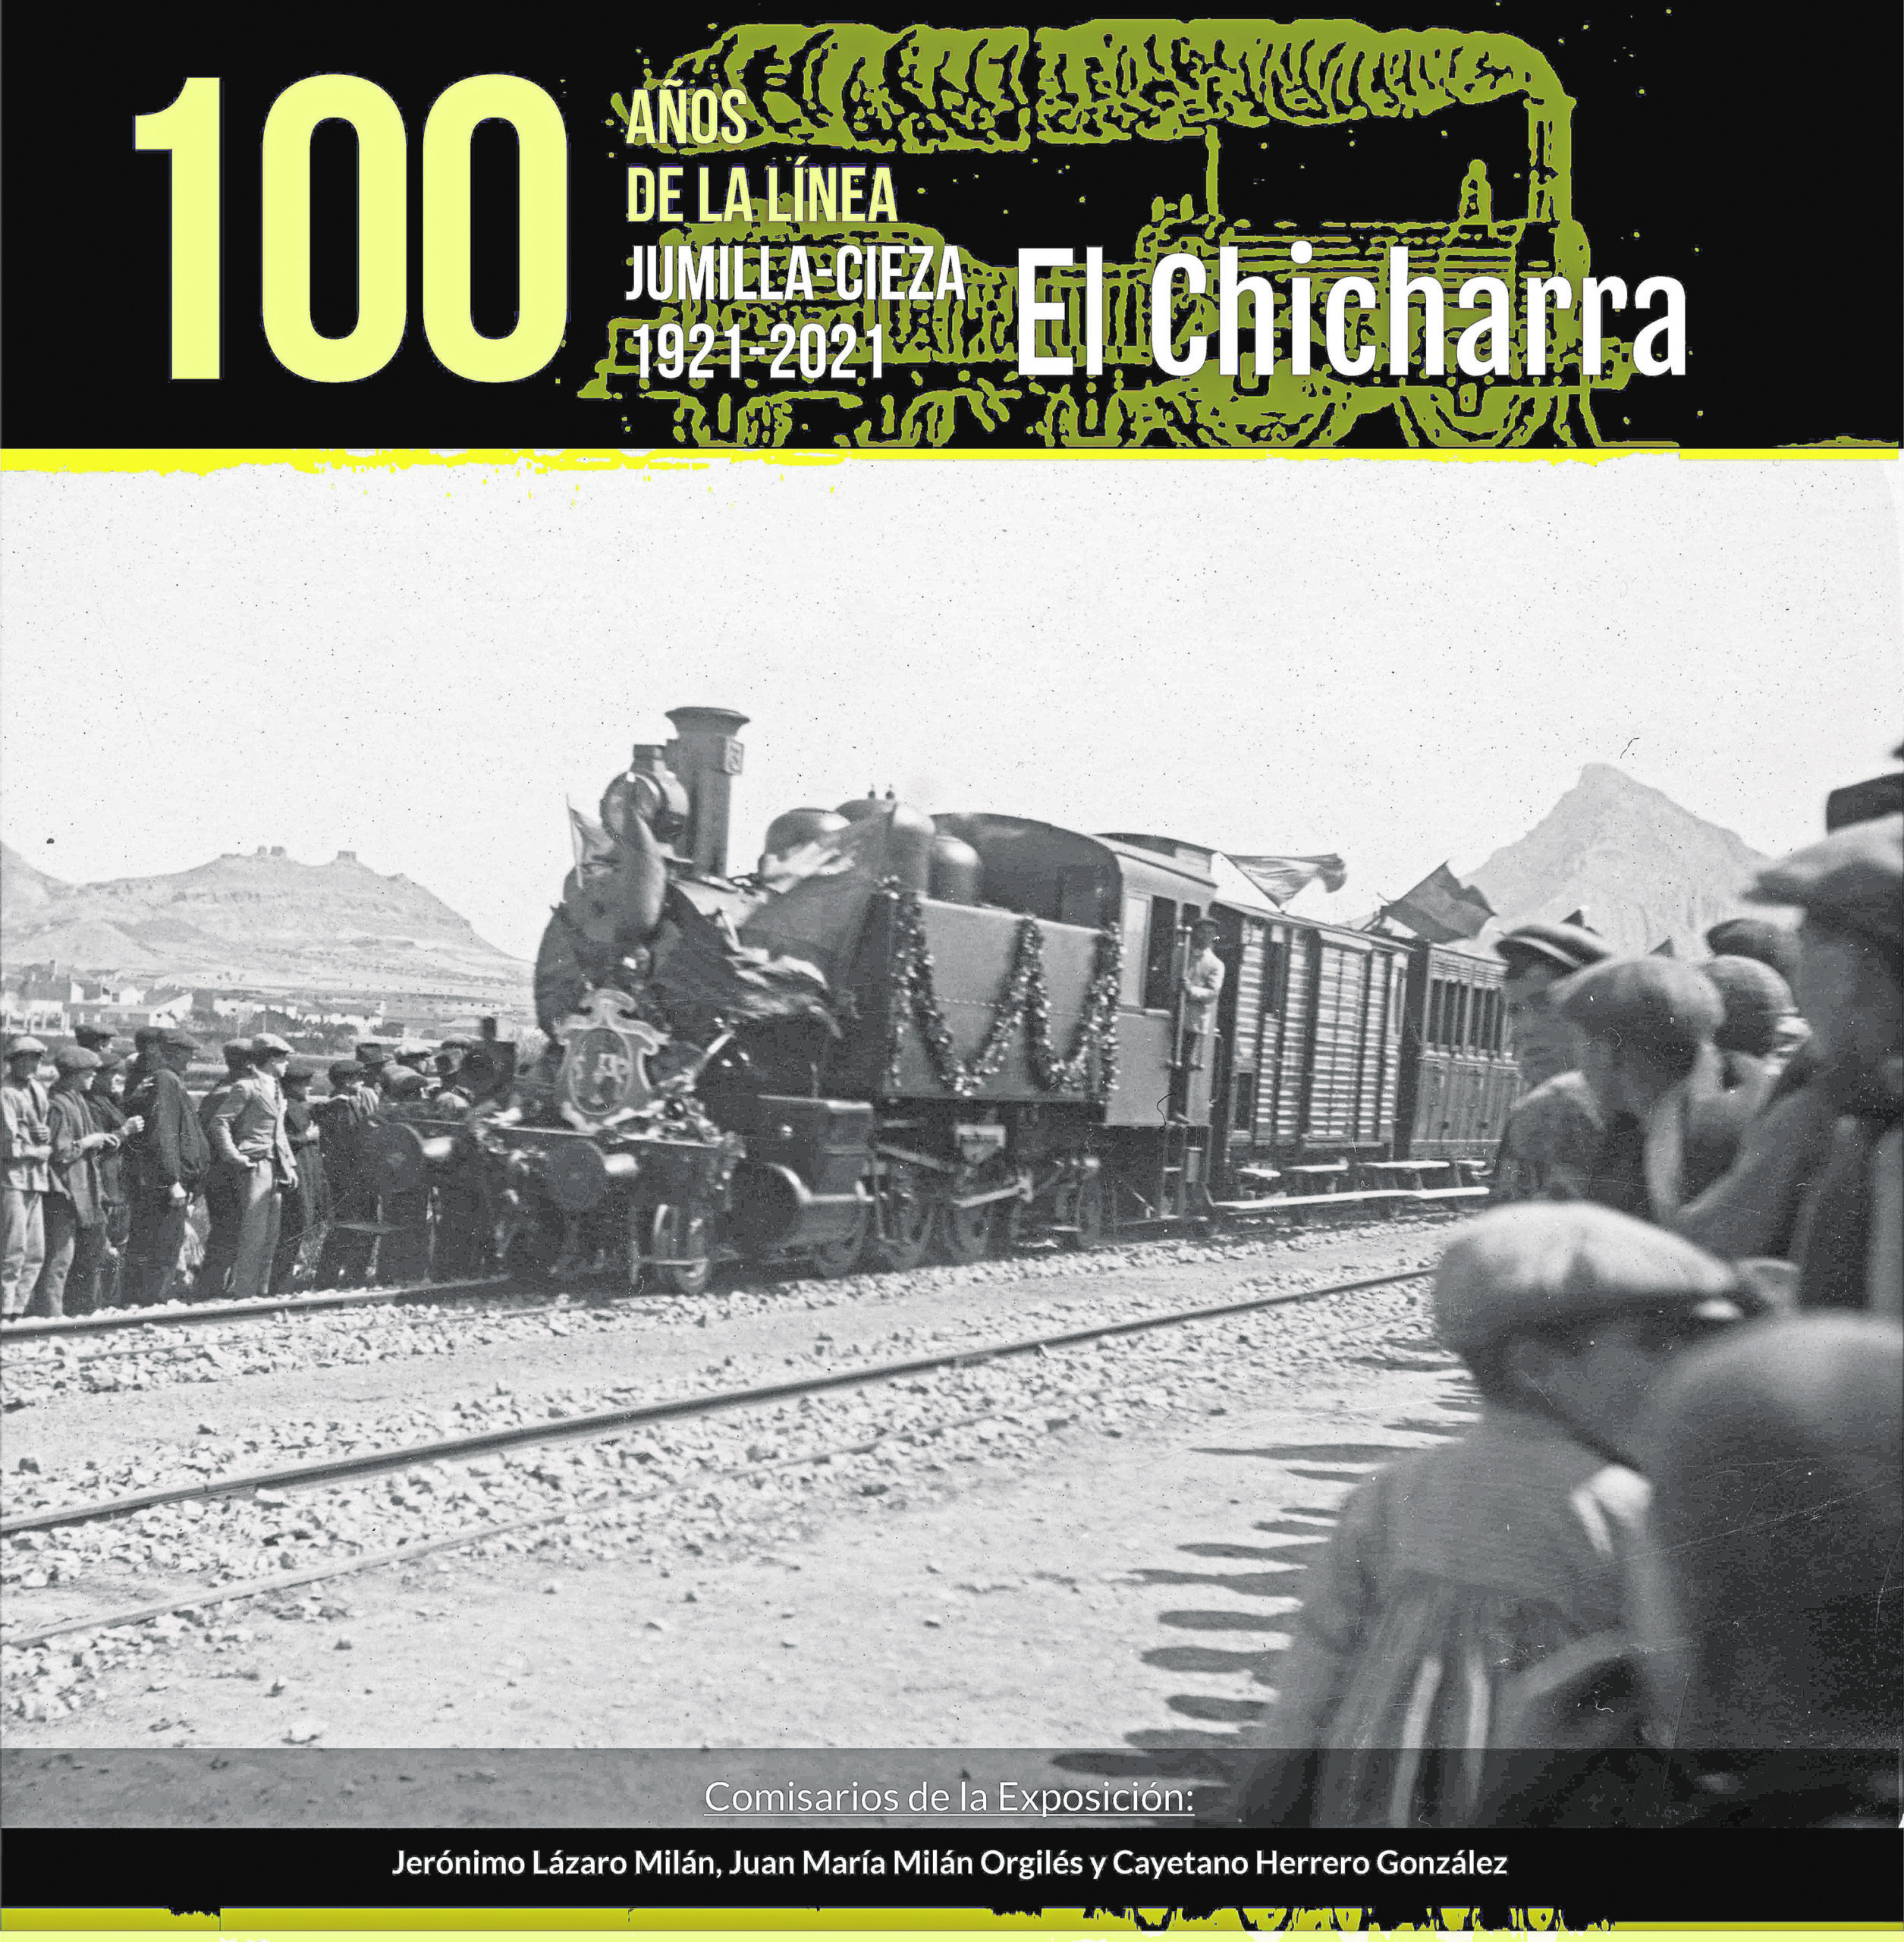 La línea Jumilla-Cieza del tren Chicharra cumple cien años y se celebra con una exposición